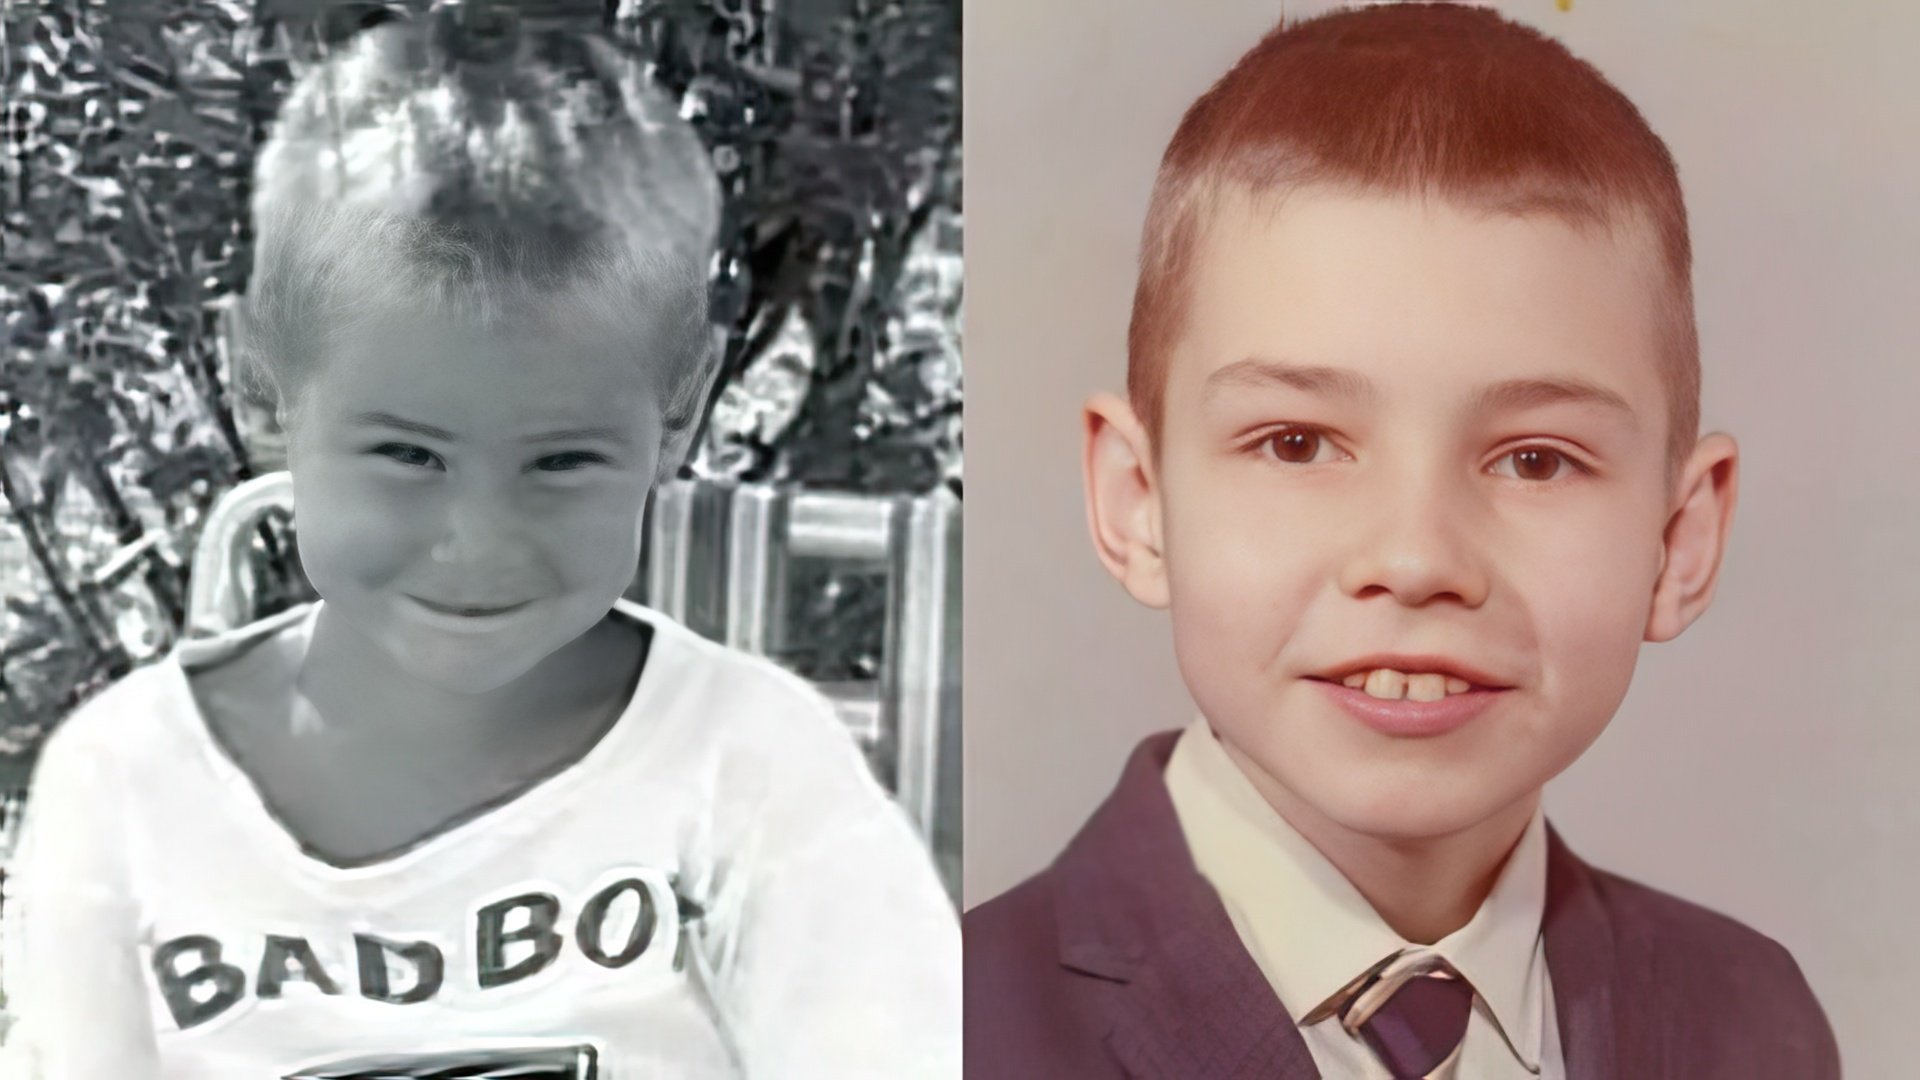 Jim Carrey’s childhood photos